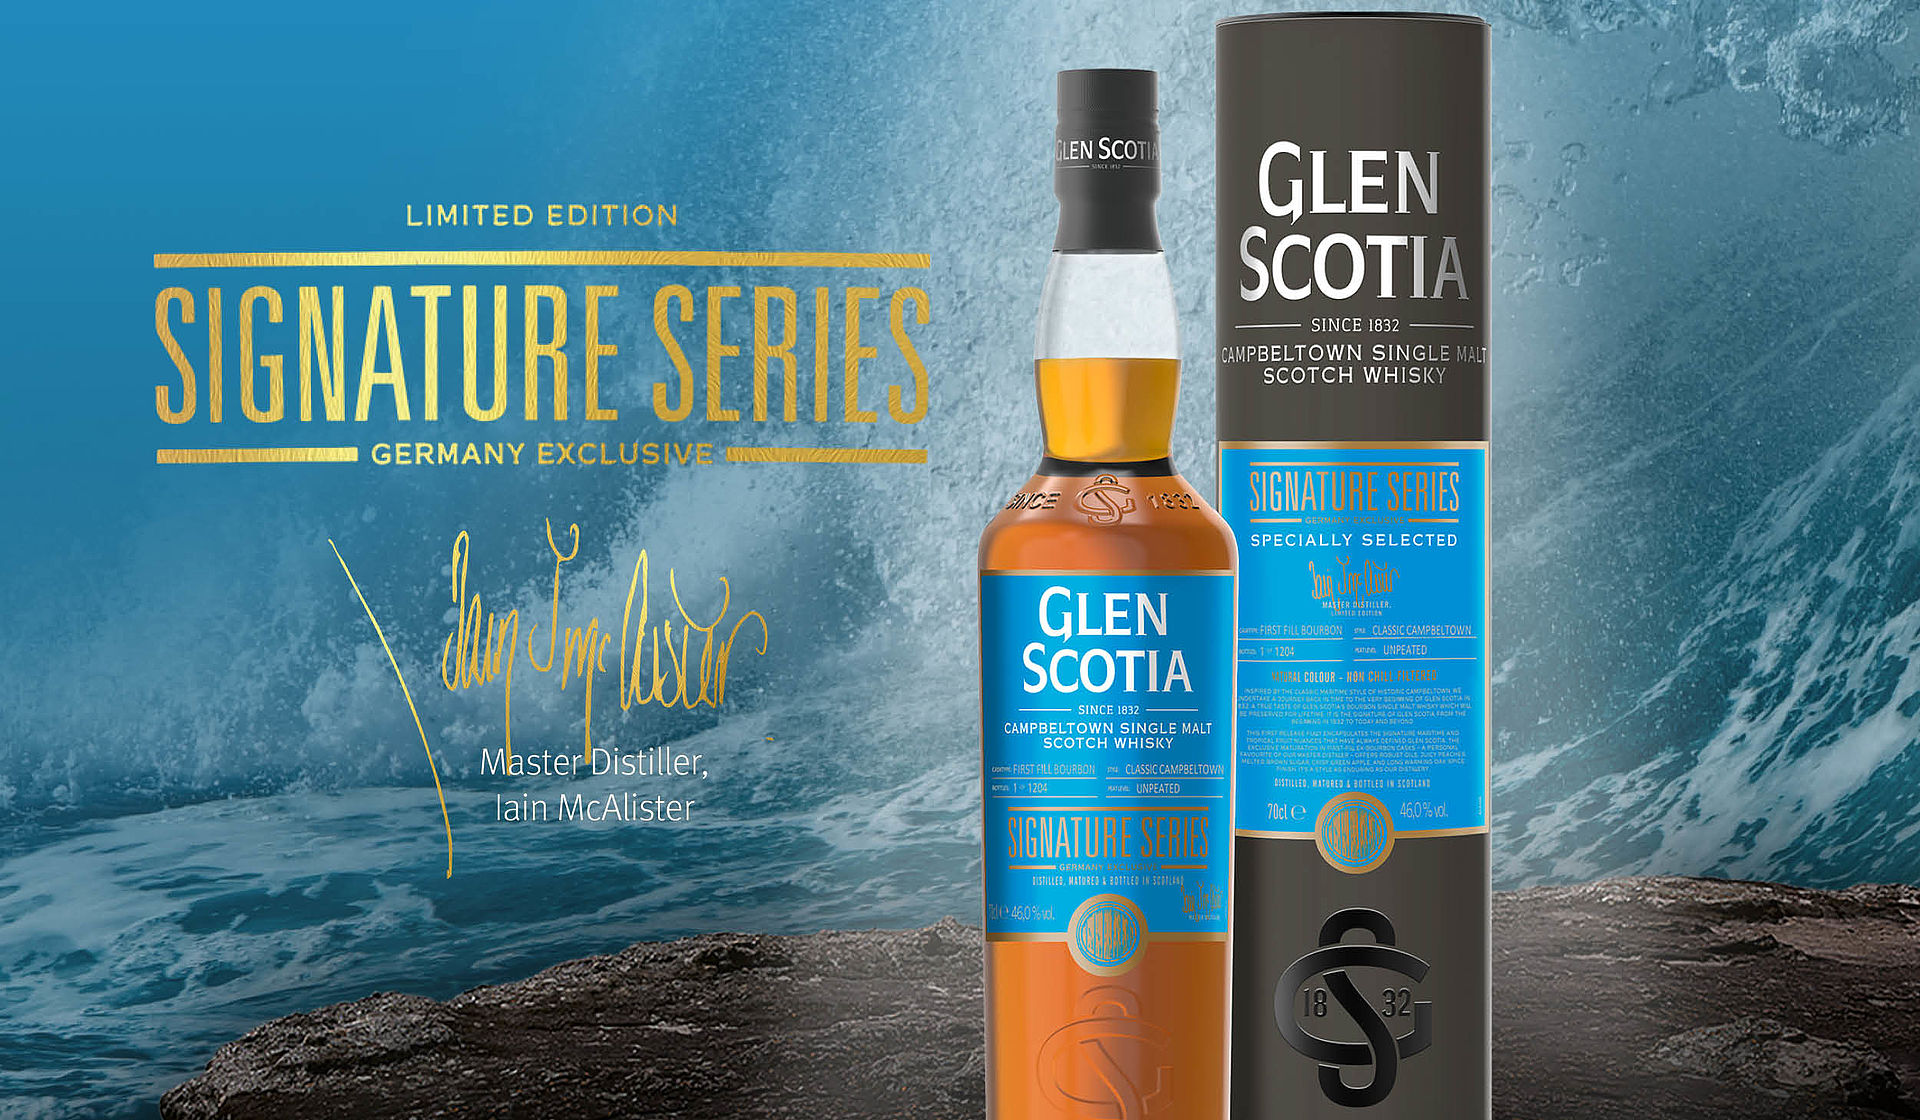 Glen Scotia The Signature Series